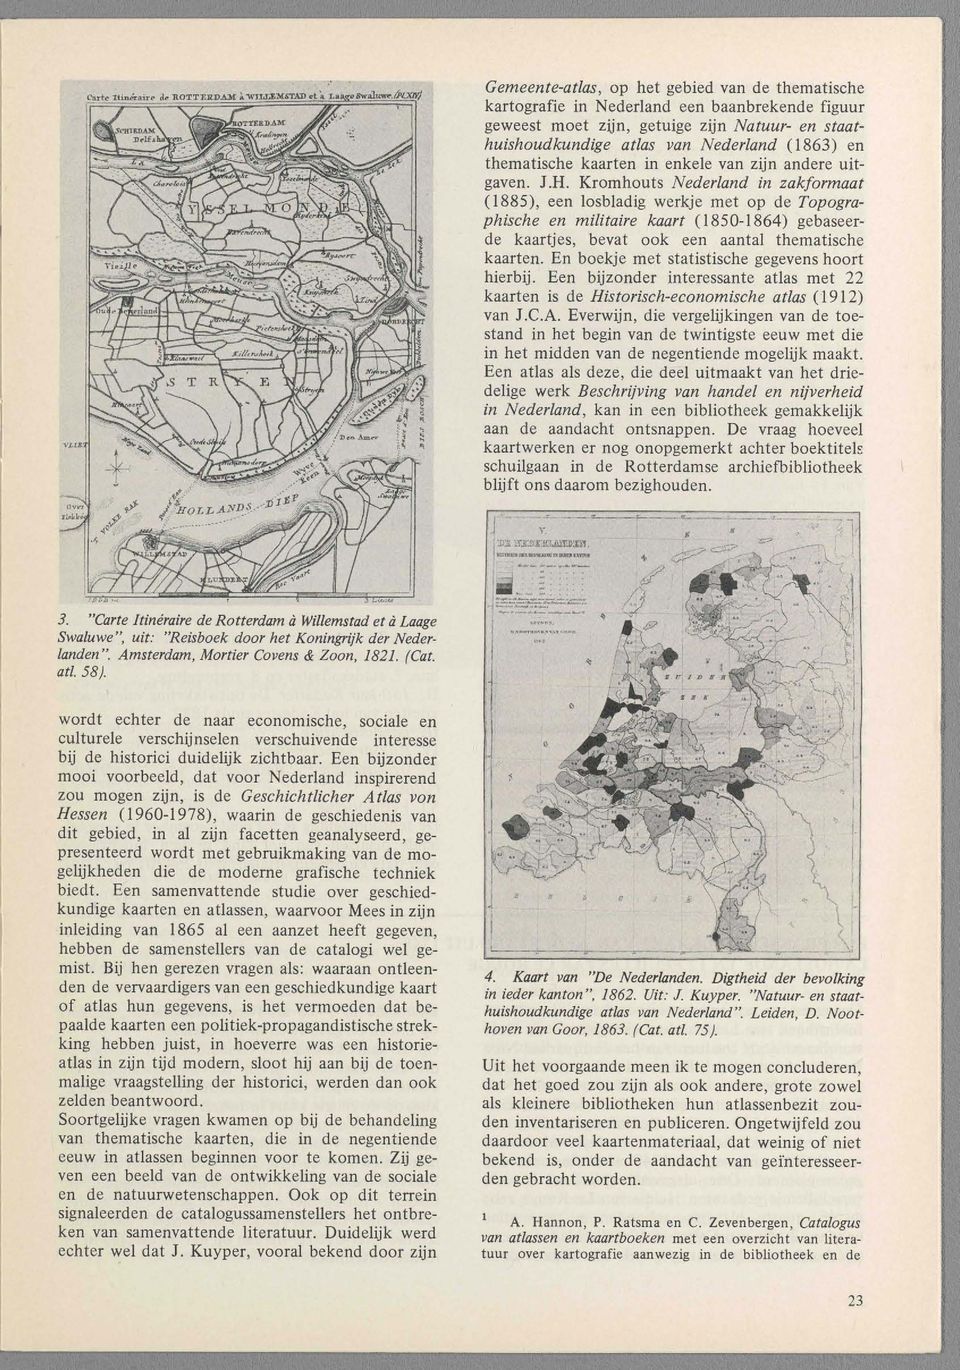 Kromhouts Nederland in zakformaat (1885), een losbladig werkje met op de Topographische en militaire kaart (1850-1864) gebaseerde kaartjes, bevat ook een aantal thematische kaarten.